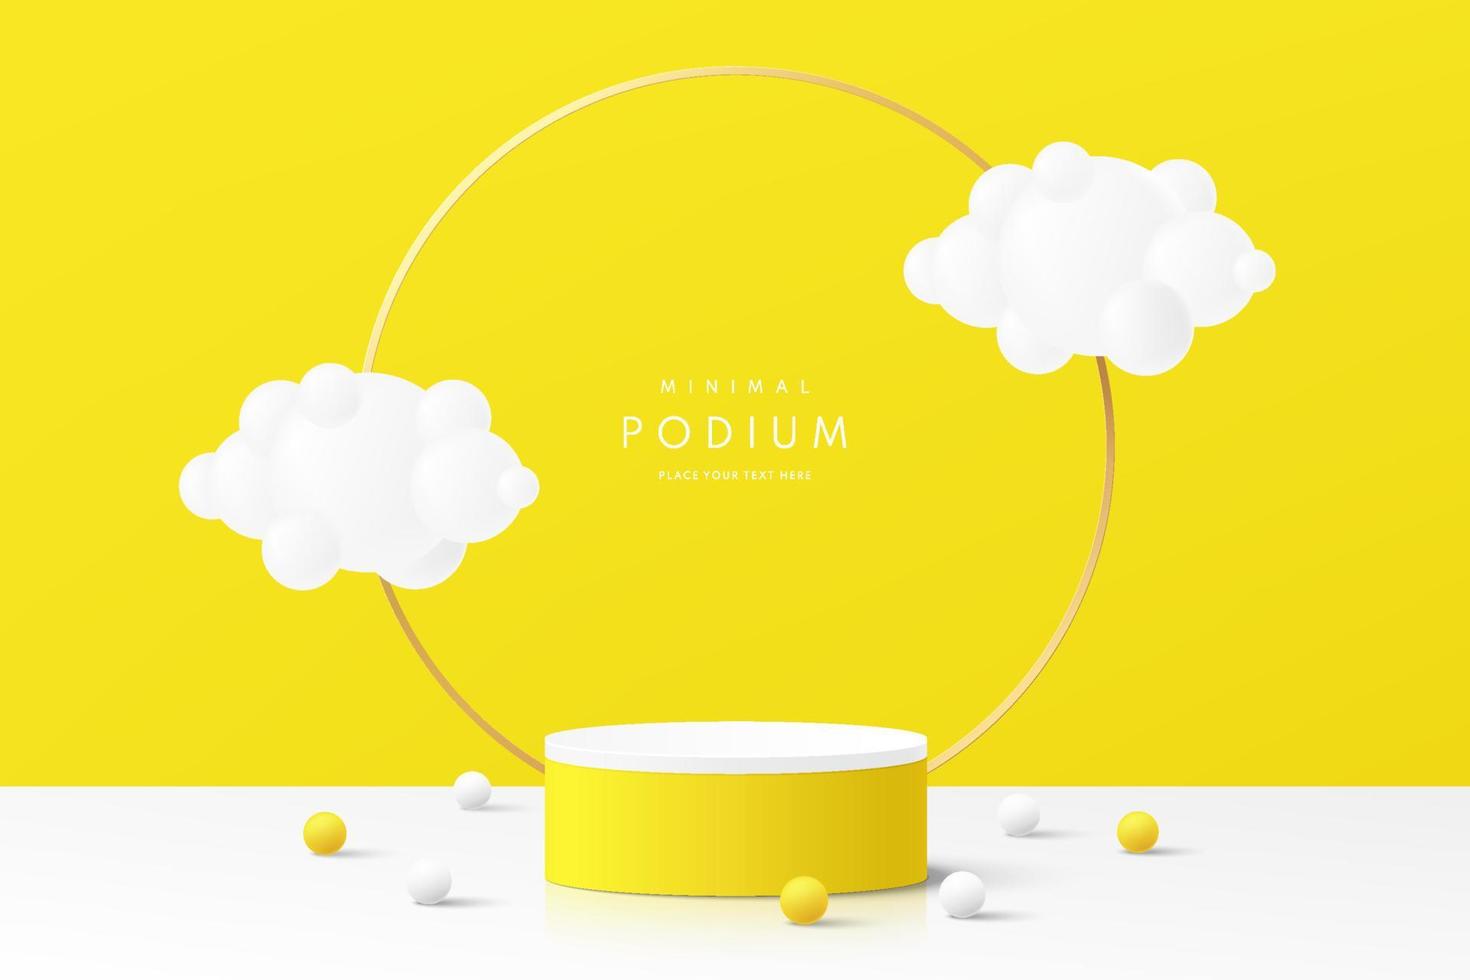 realistisch geel en wit 3d cilinder voetstuk podium met gouden ring en vliegende wolken. abstracte minimale scène voor mockup-producten, podium voor showcase, promotieweergave. vector geometrische vormen.